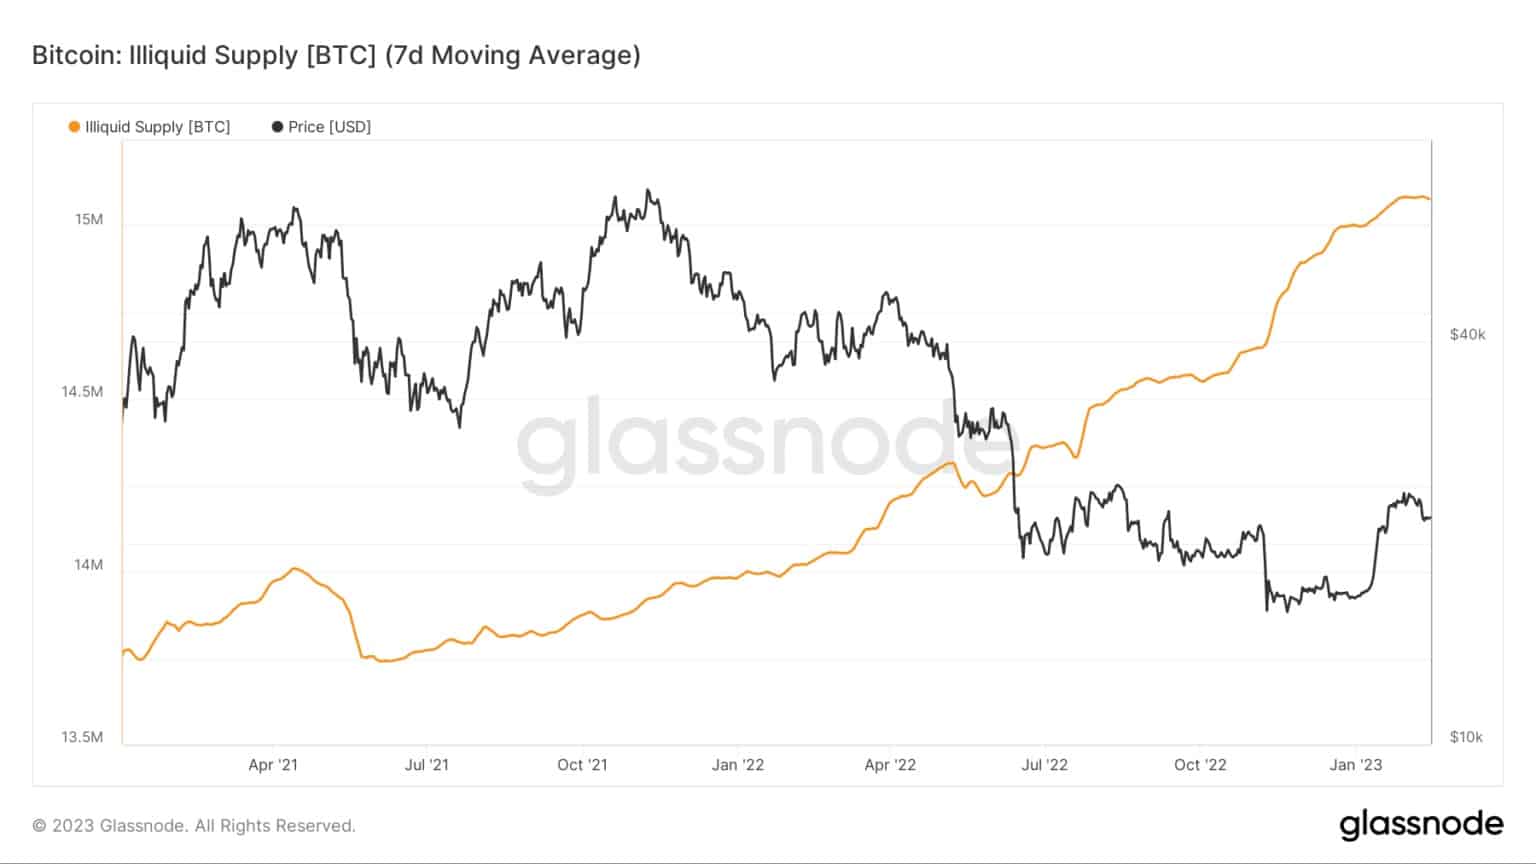 Graf zobrazující nelikvidní nabídku Bitcoinu od ledna 2021 do února 2023 (zdroj: Glassnode)